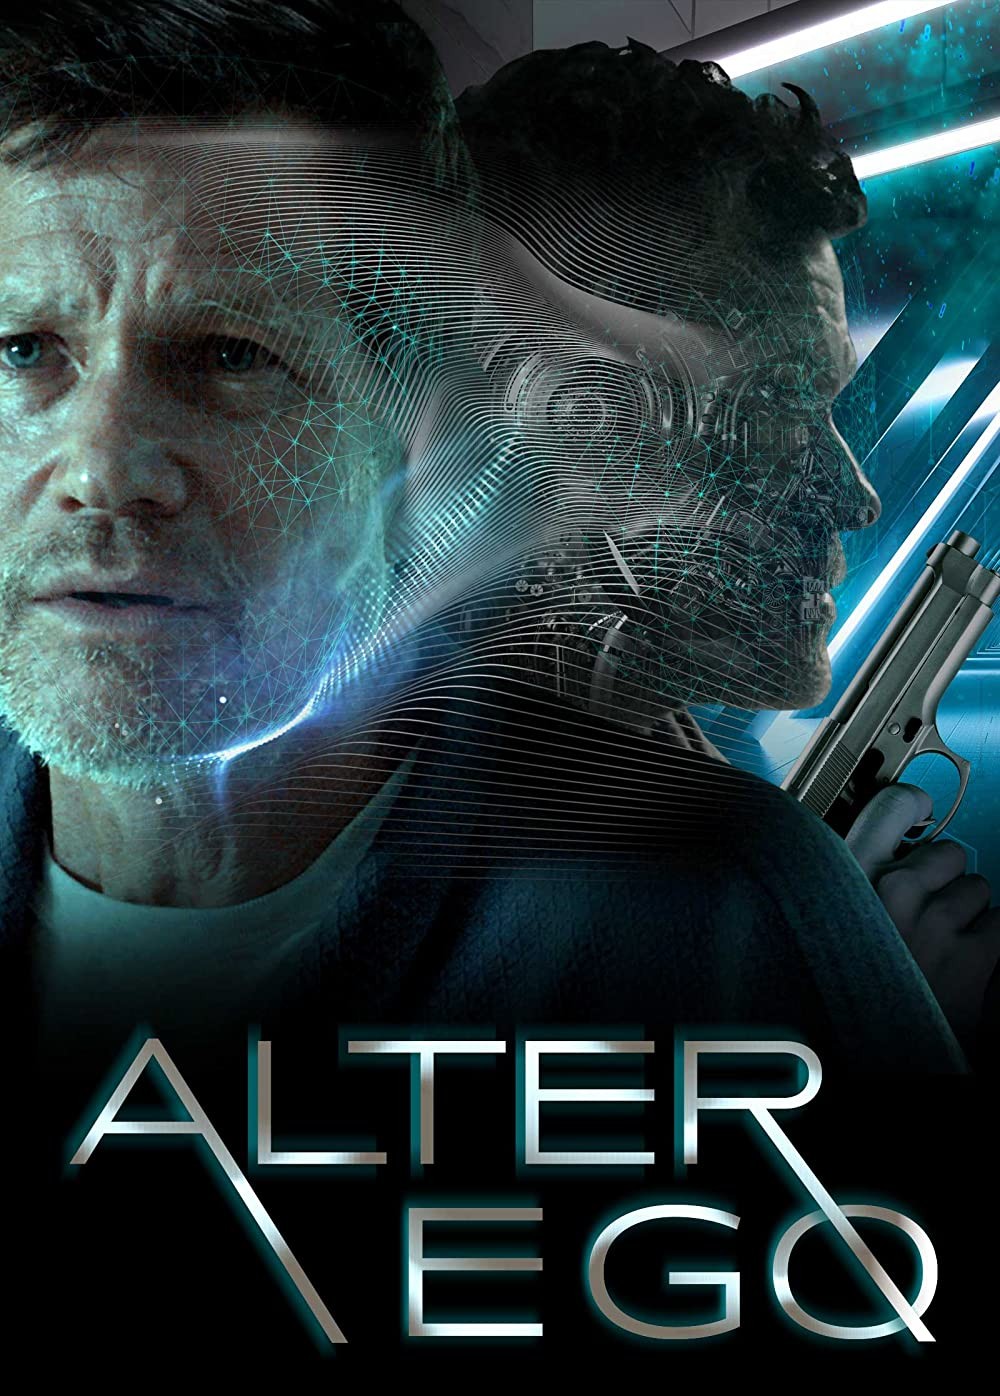 دانلود فیلم آلتر اگو Alter Ego 2021